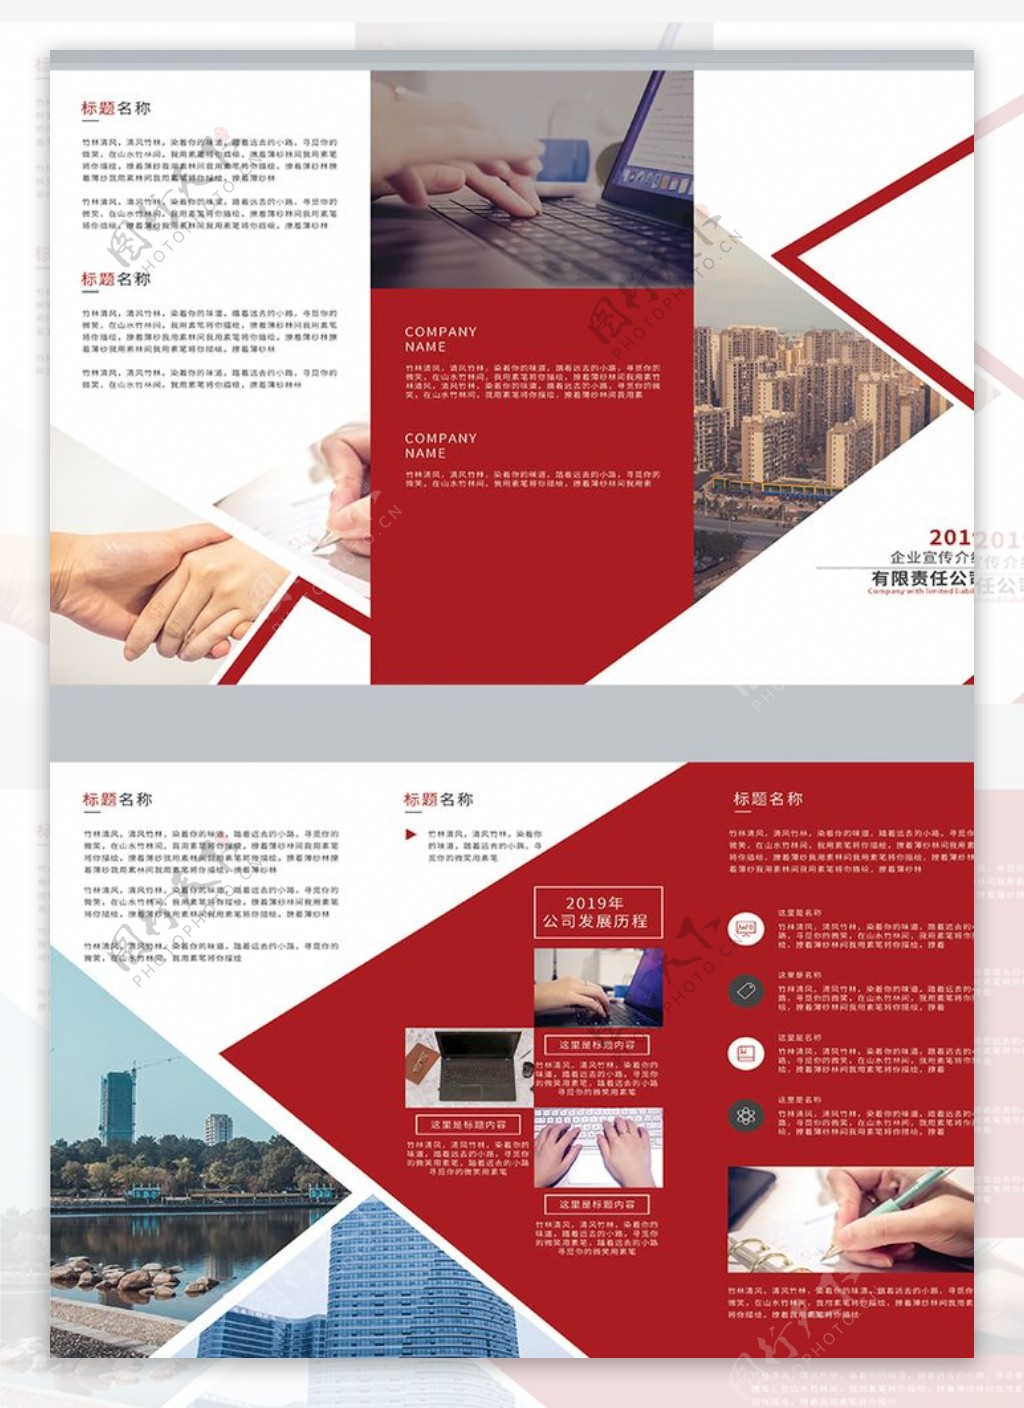 红色简约企业三折页设计模板画册